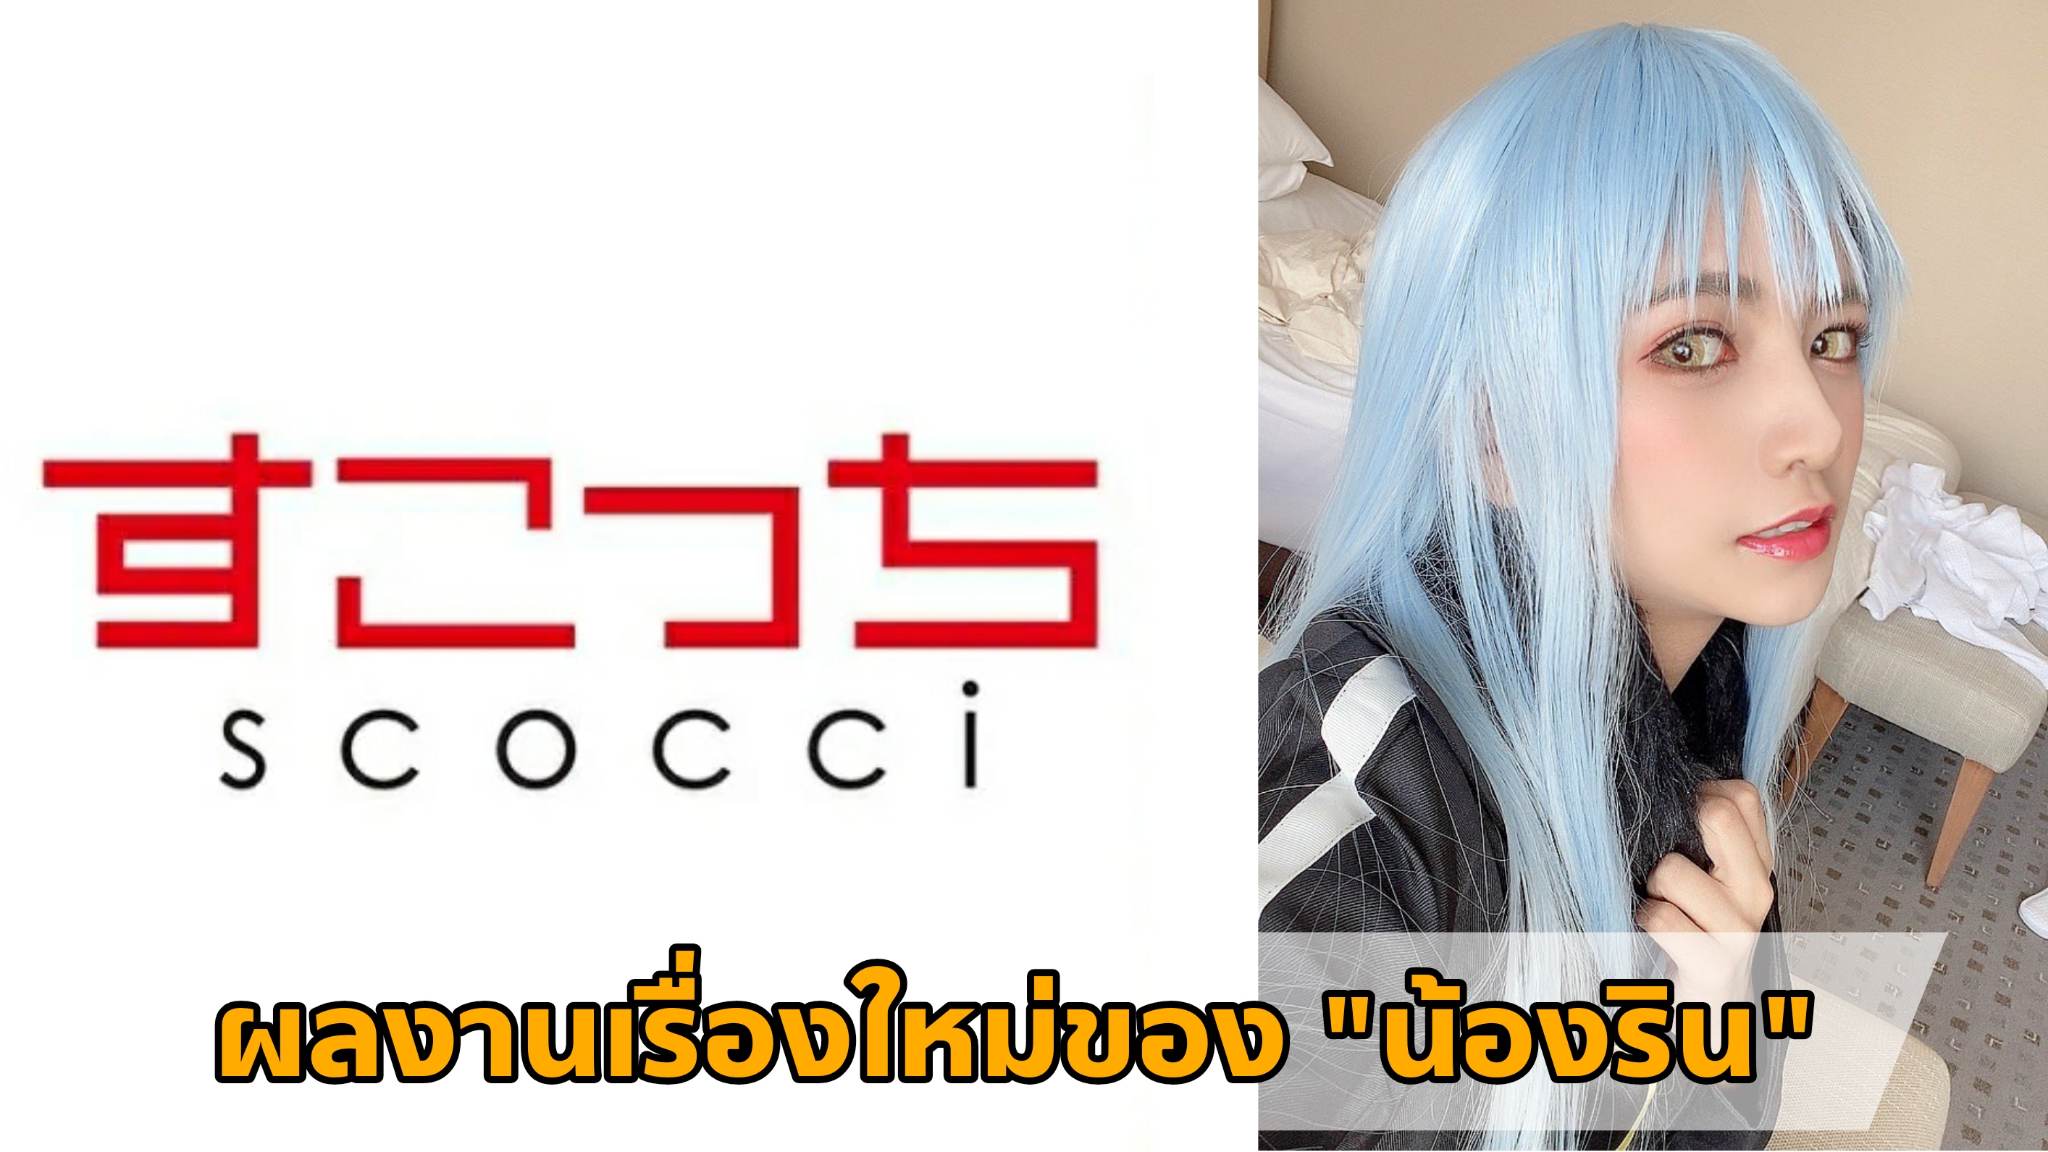 [SCOH-105] ผลงานเรื่องใหม่ของ "น้องริน" (Rin Miyazaki) Cosplay เป็น "ท่านริมุรุ" 2